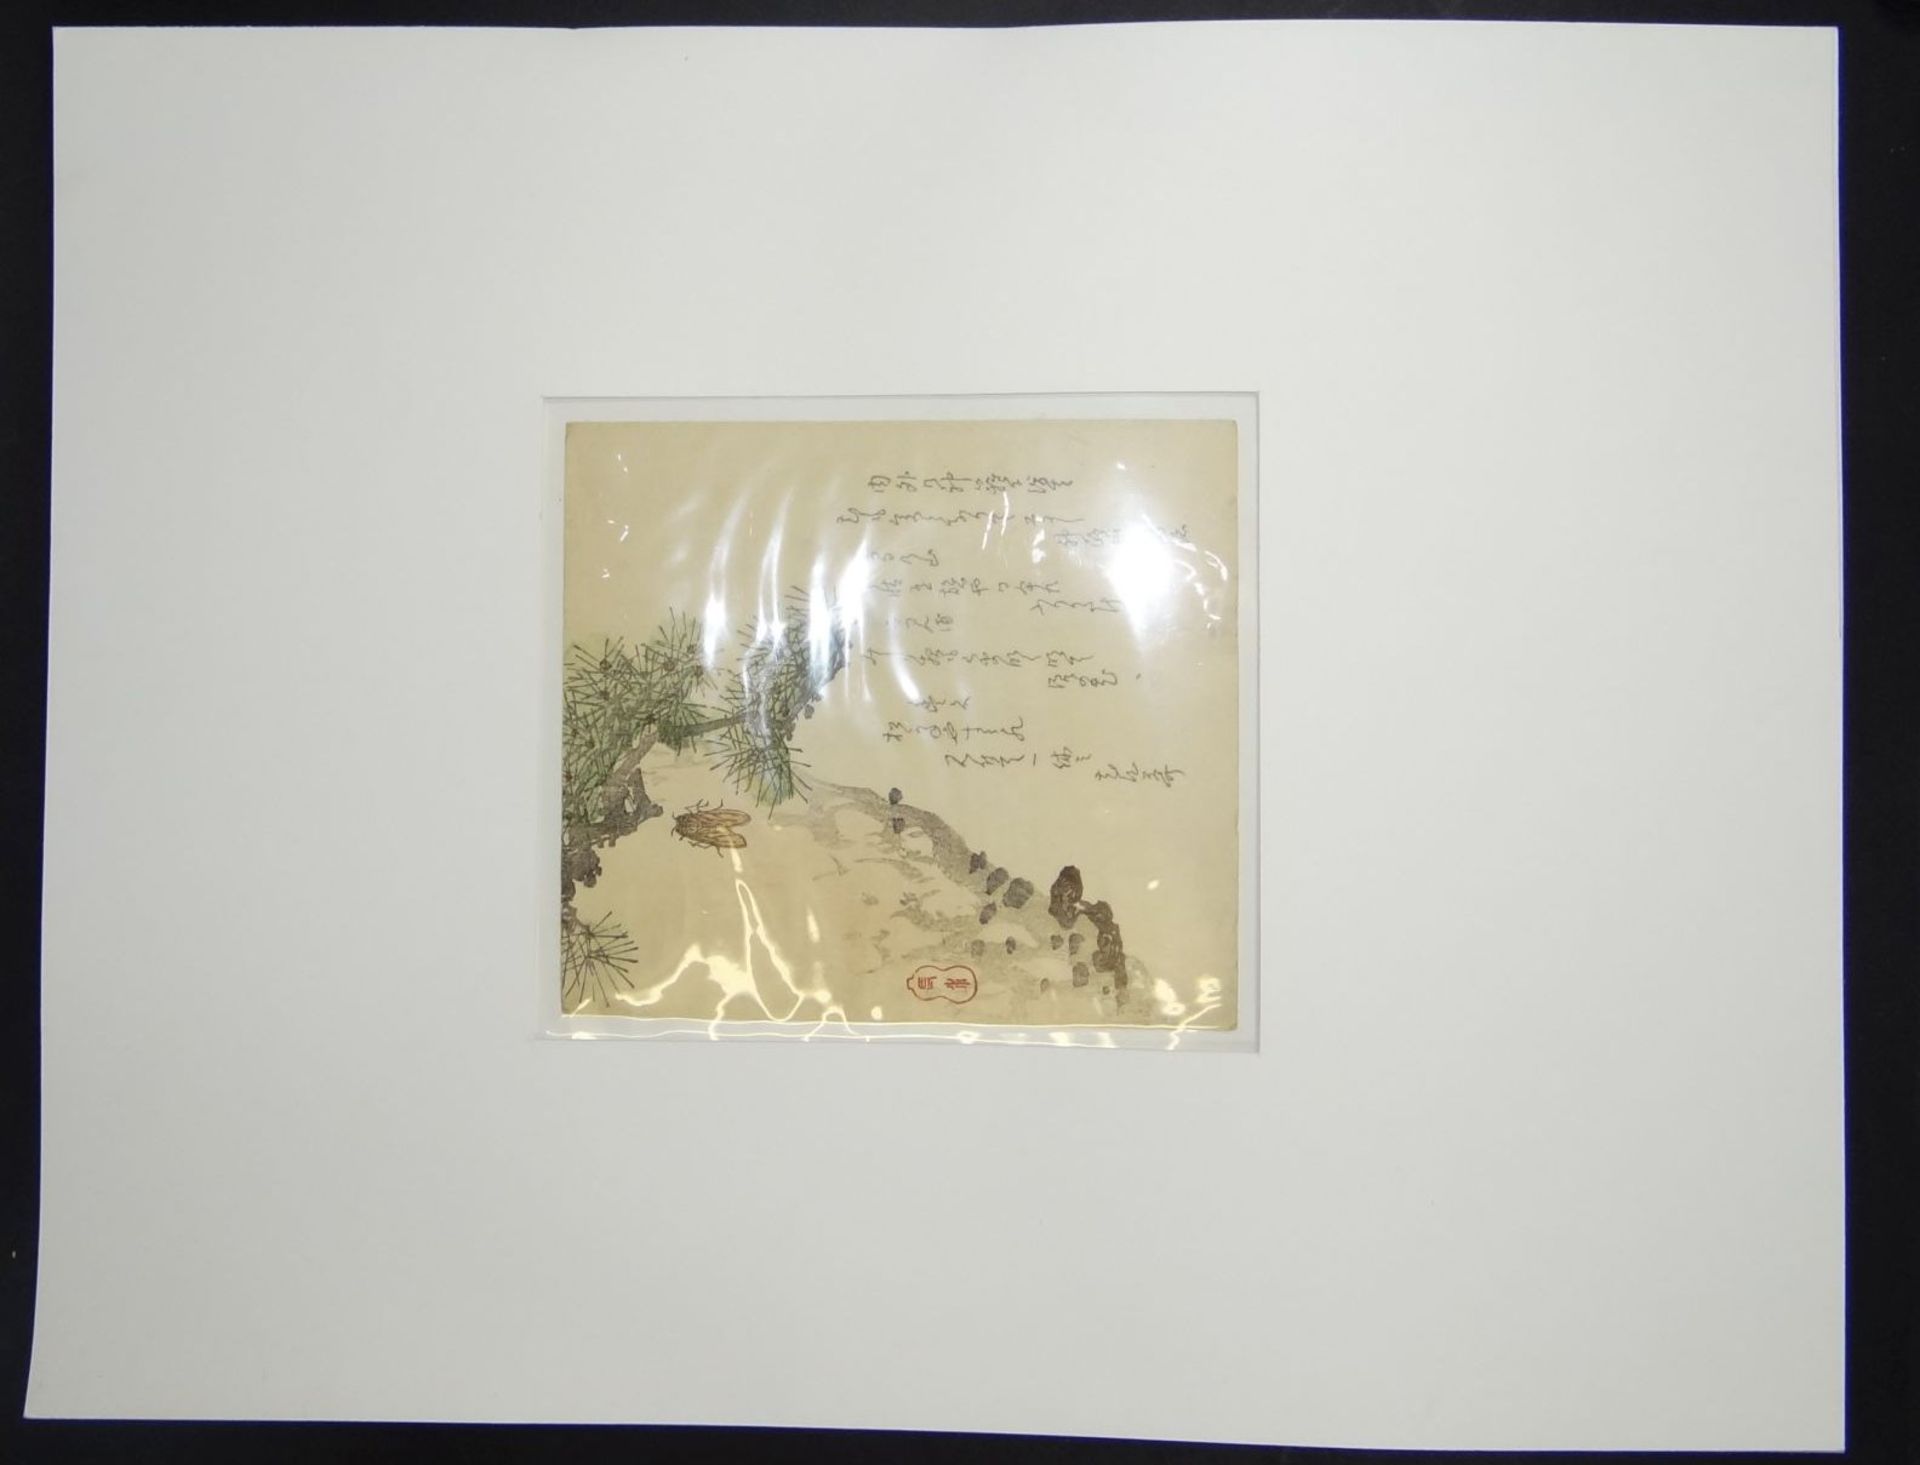 Surimono, japan. Farbholzschnitt um 1850 in PP, Zikade und Kiefernzweig, 18,5x17 cm, PP 40x50 cm - Bild 4 aus 4